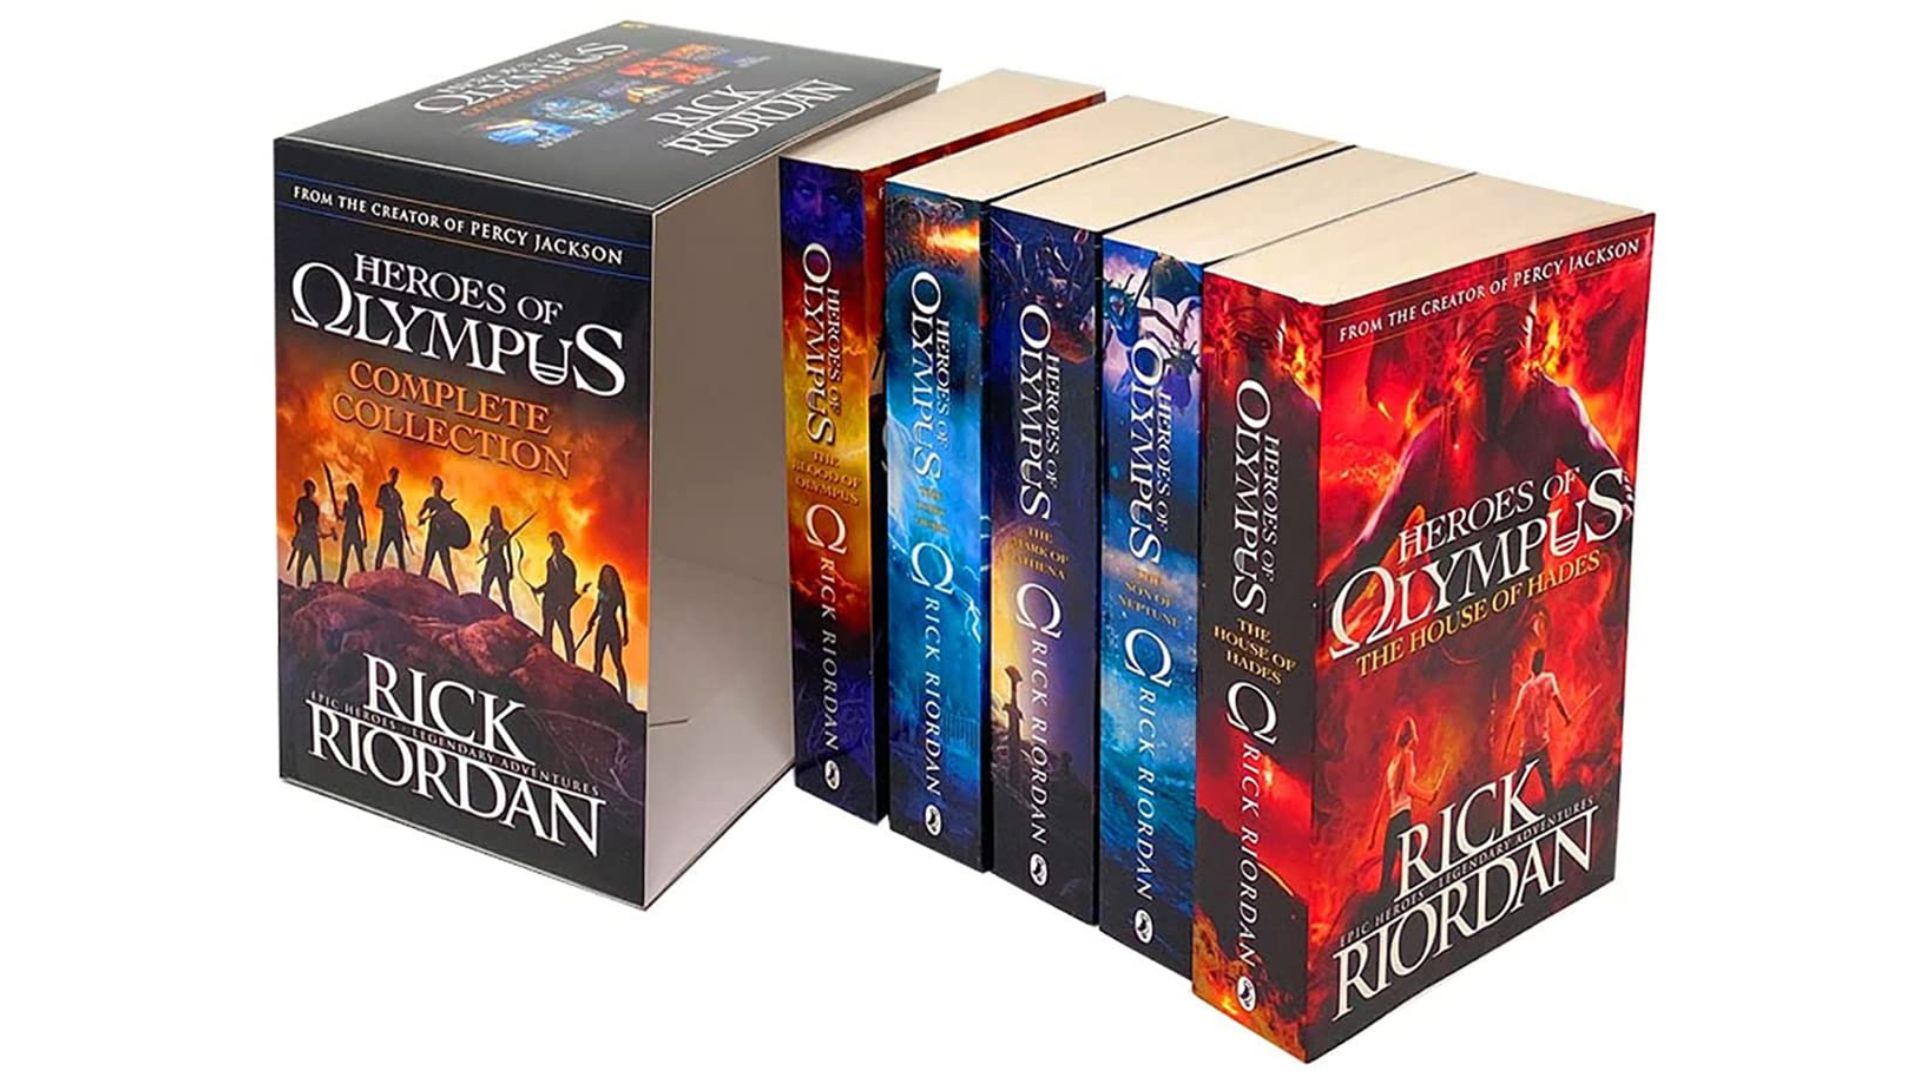 Heroes of Olympus books in order